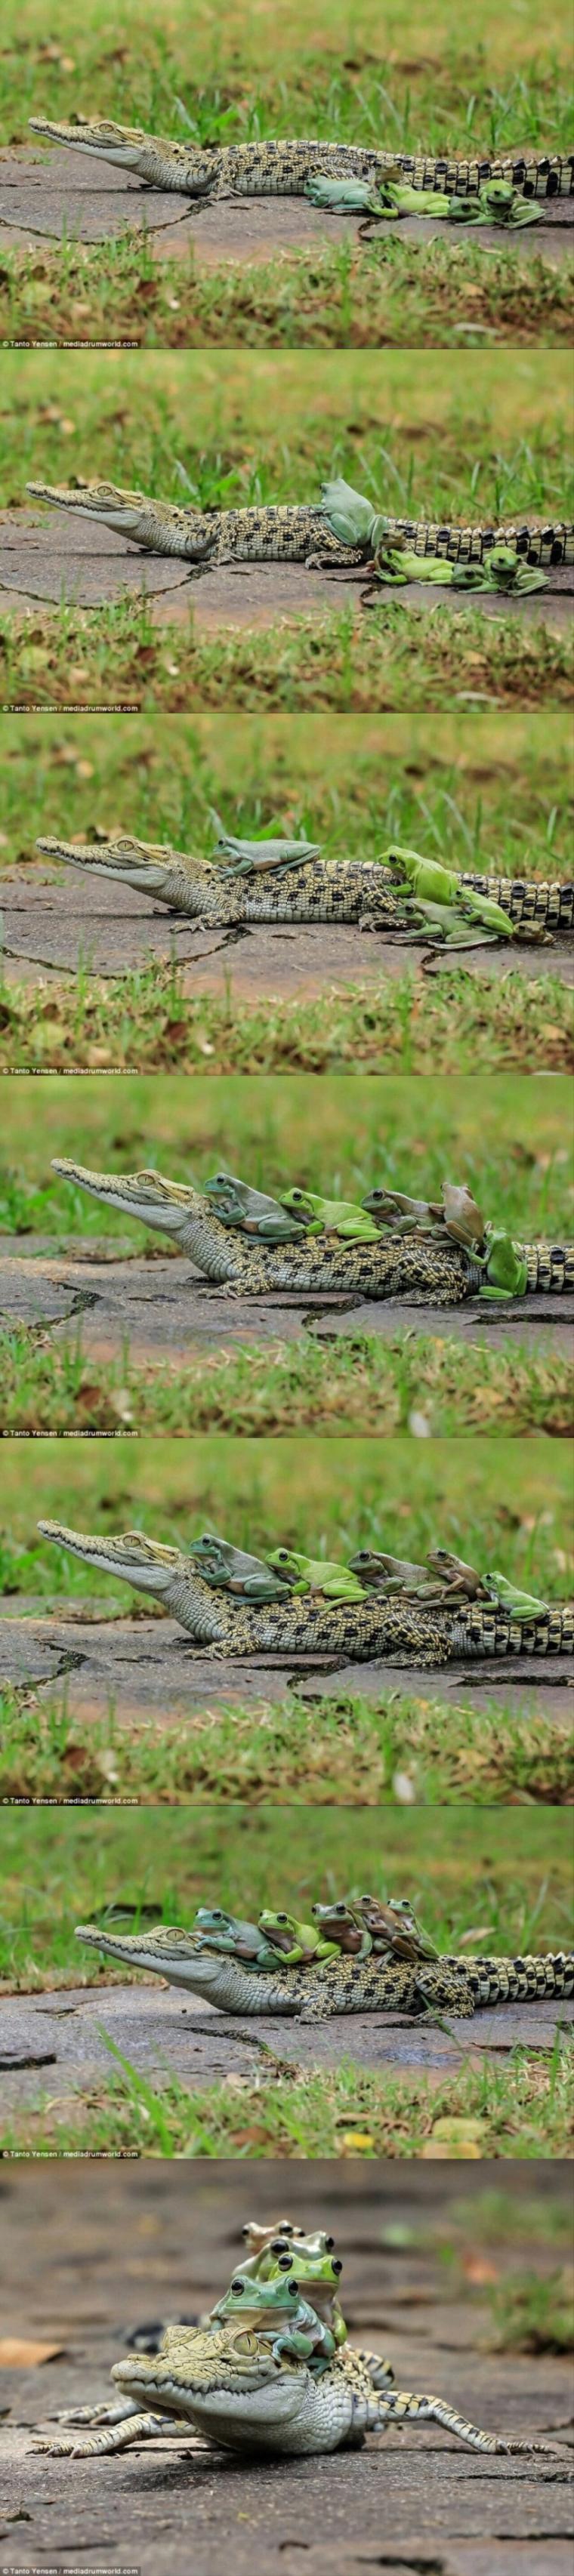 인도네시아에서 촬영된 개구리 악어 버스.jpg